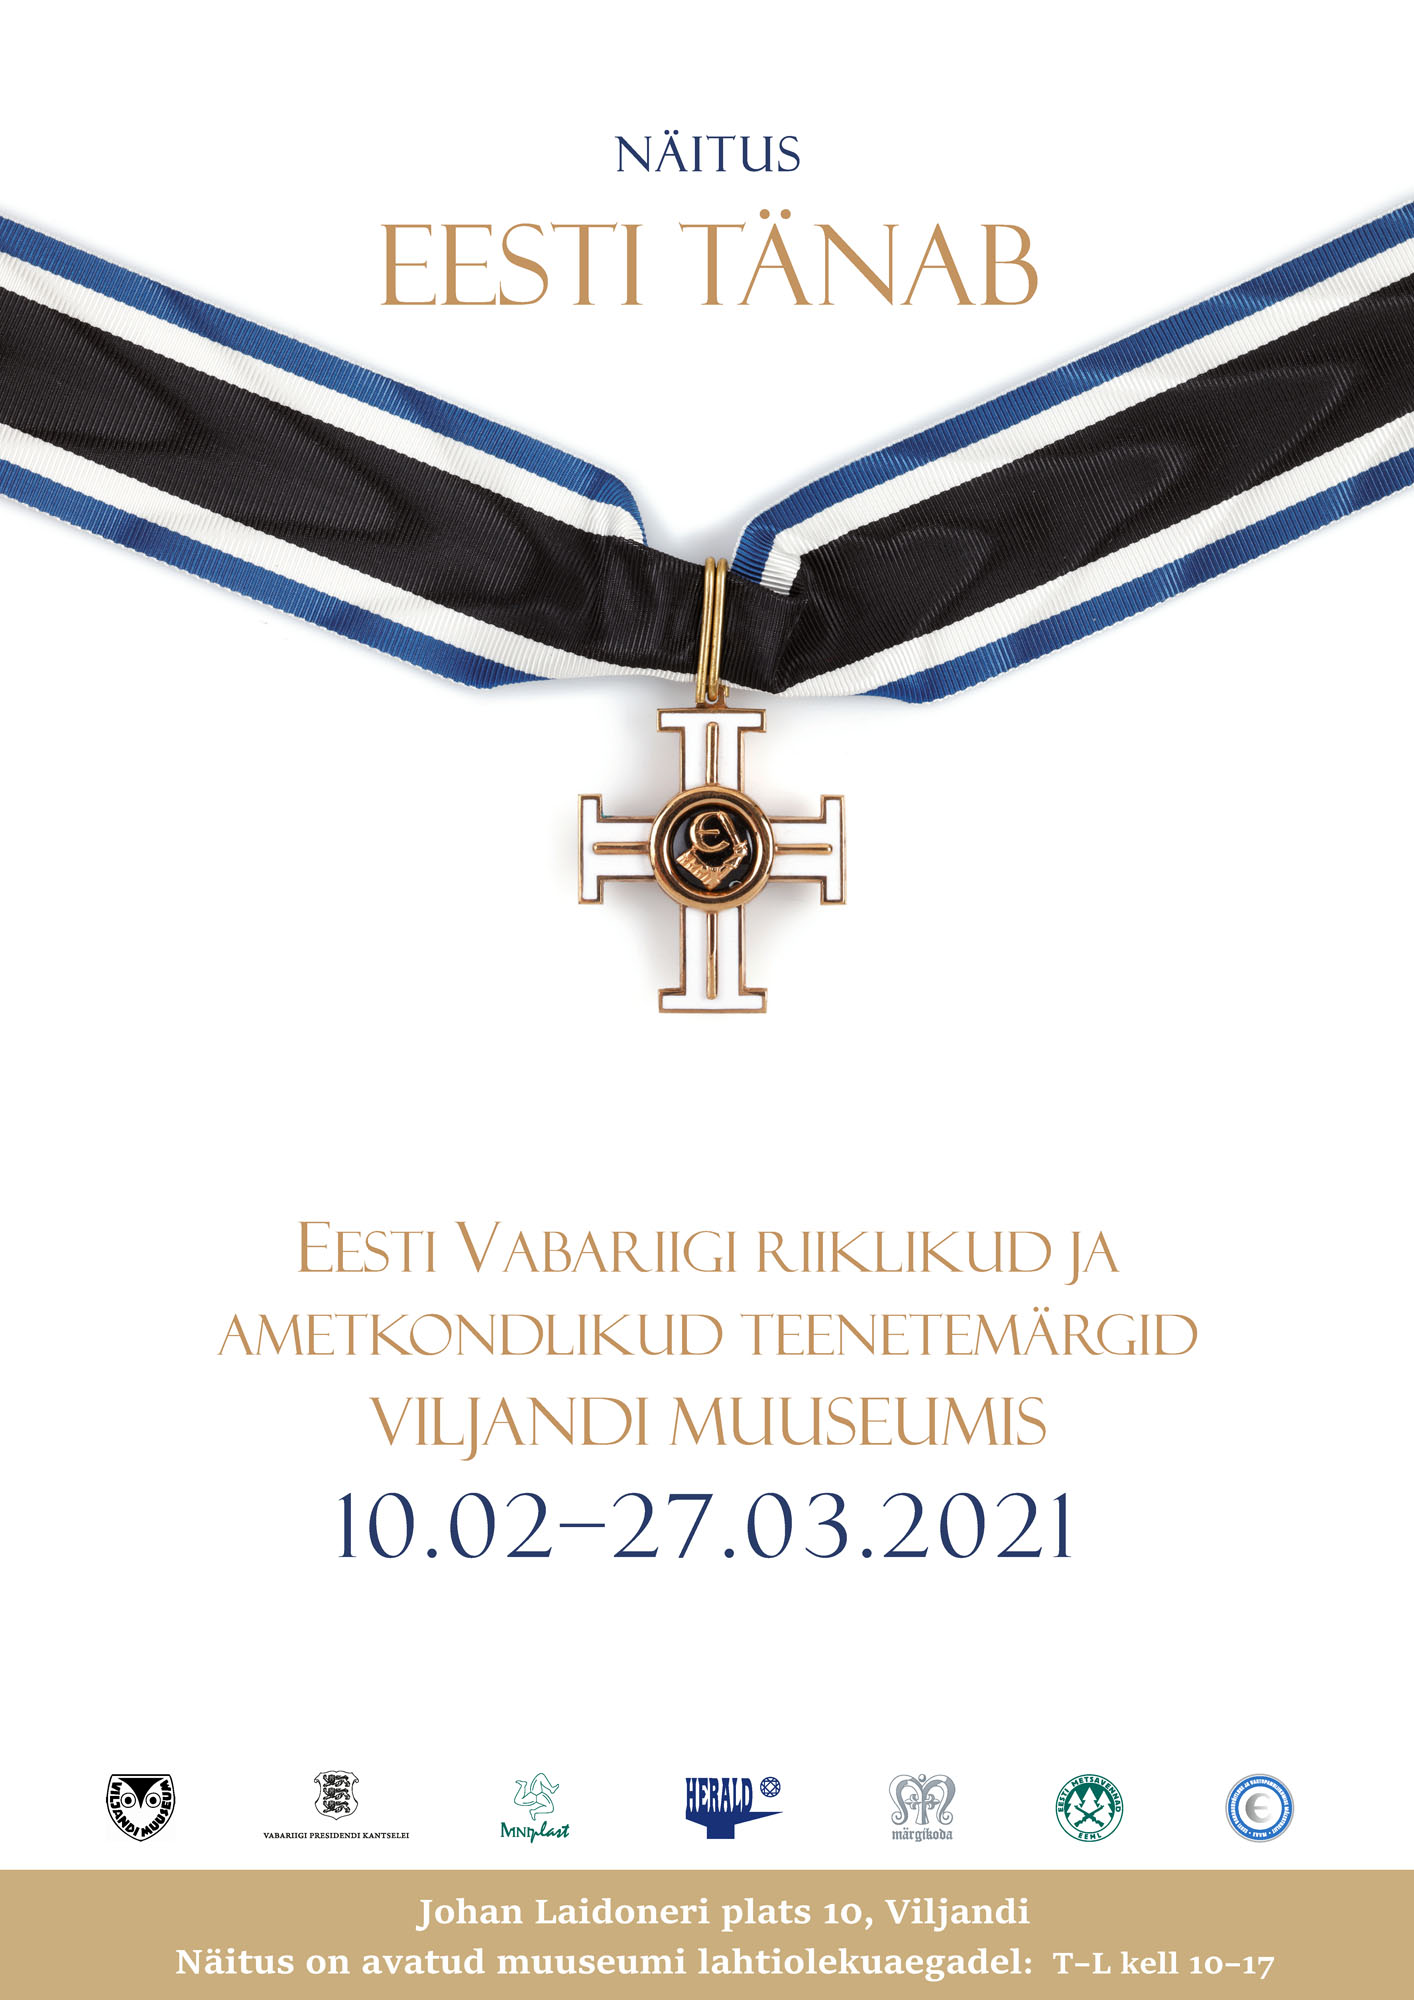 Näituse „Eesti tänab“ plakat